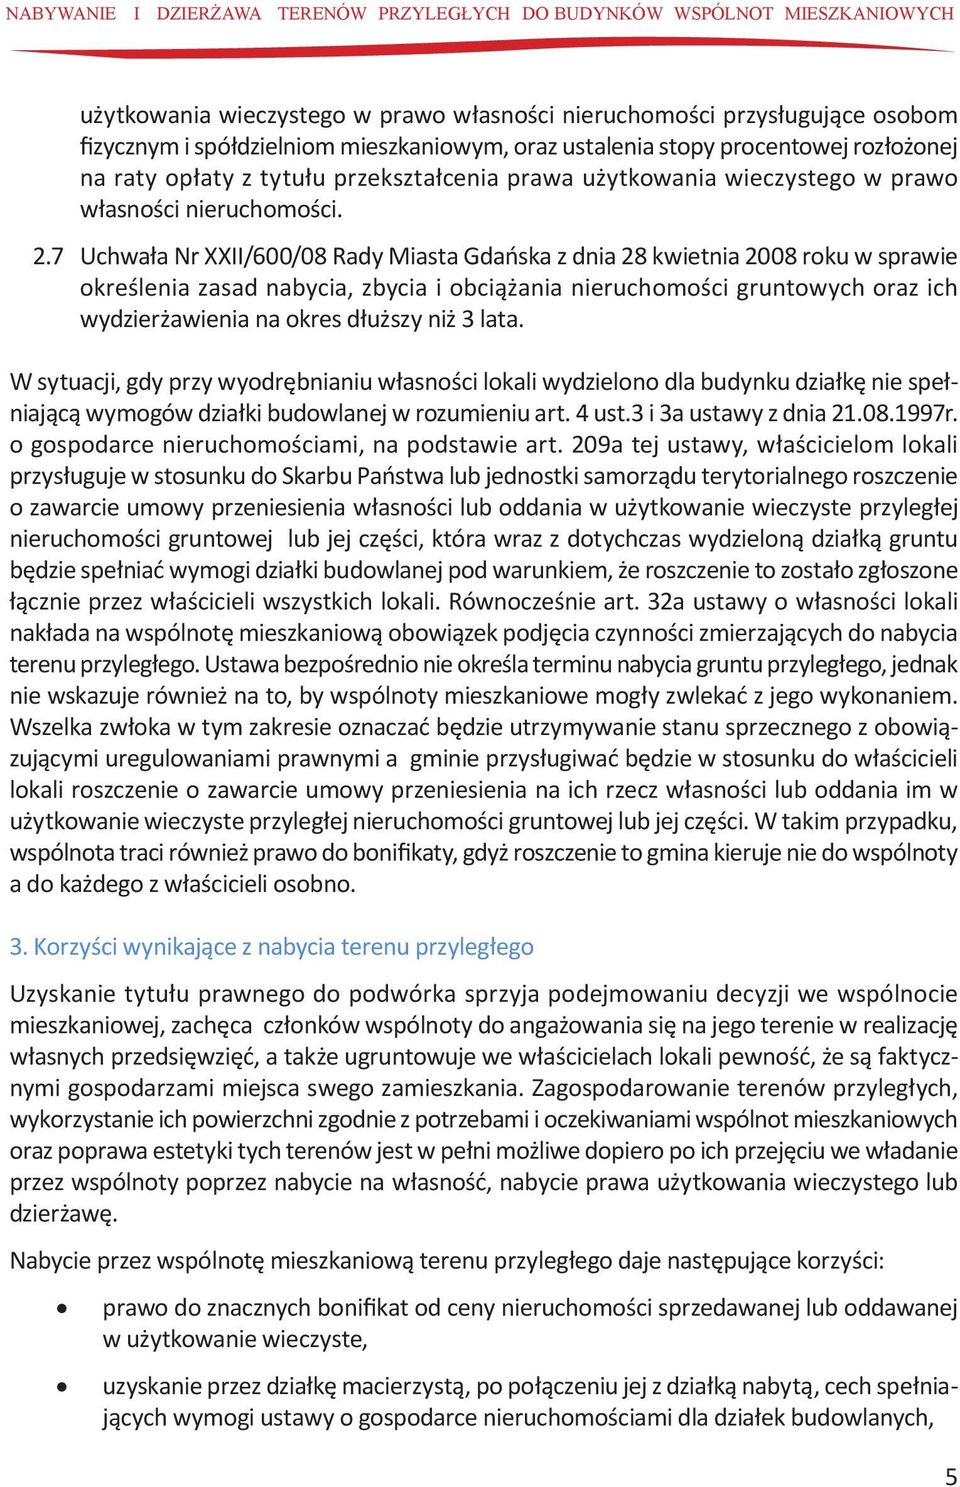 7 Uchwała Nr XXII/600/08 Rady Miasta Gdańska z dnia 28 kwietnia 2008 roku w sprawie określenia zasad nabycia, zbycia i obciążania nieruchomości gruntowych oraz ich wydzierżawienia na okres dłuższy